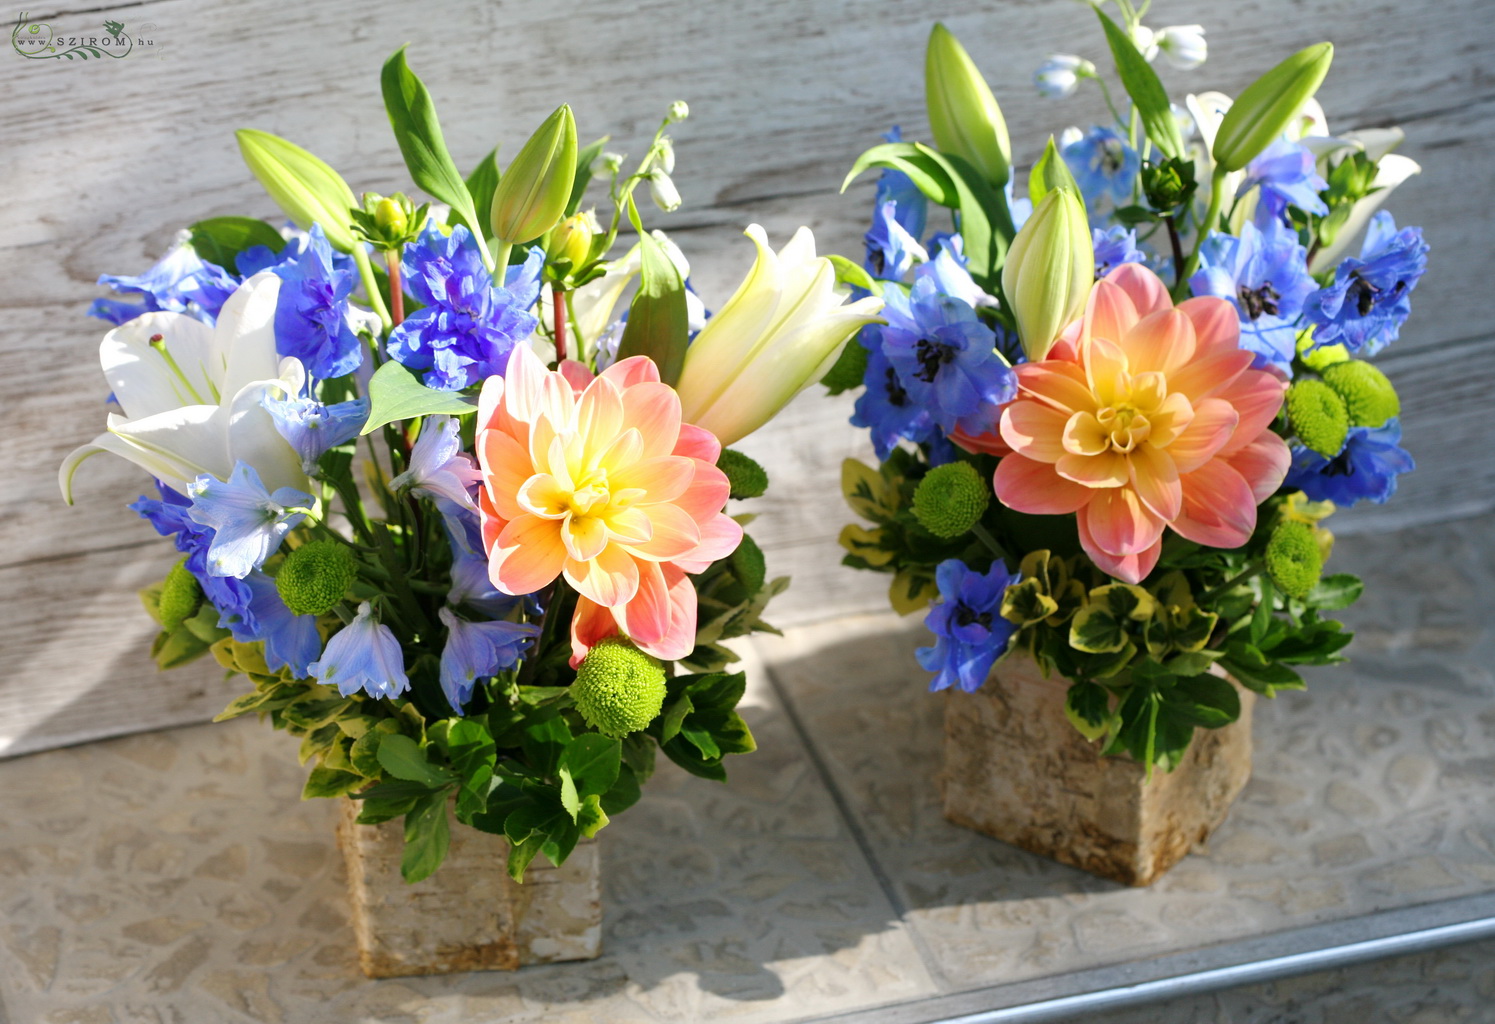 Virágküldés Budapest - Asztaldísz 1 db (delphinium, liliom, dália, kék, narancs), esküvő